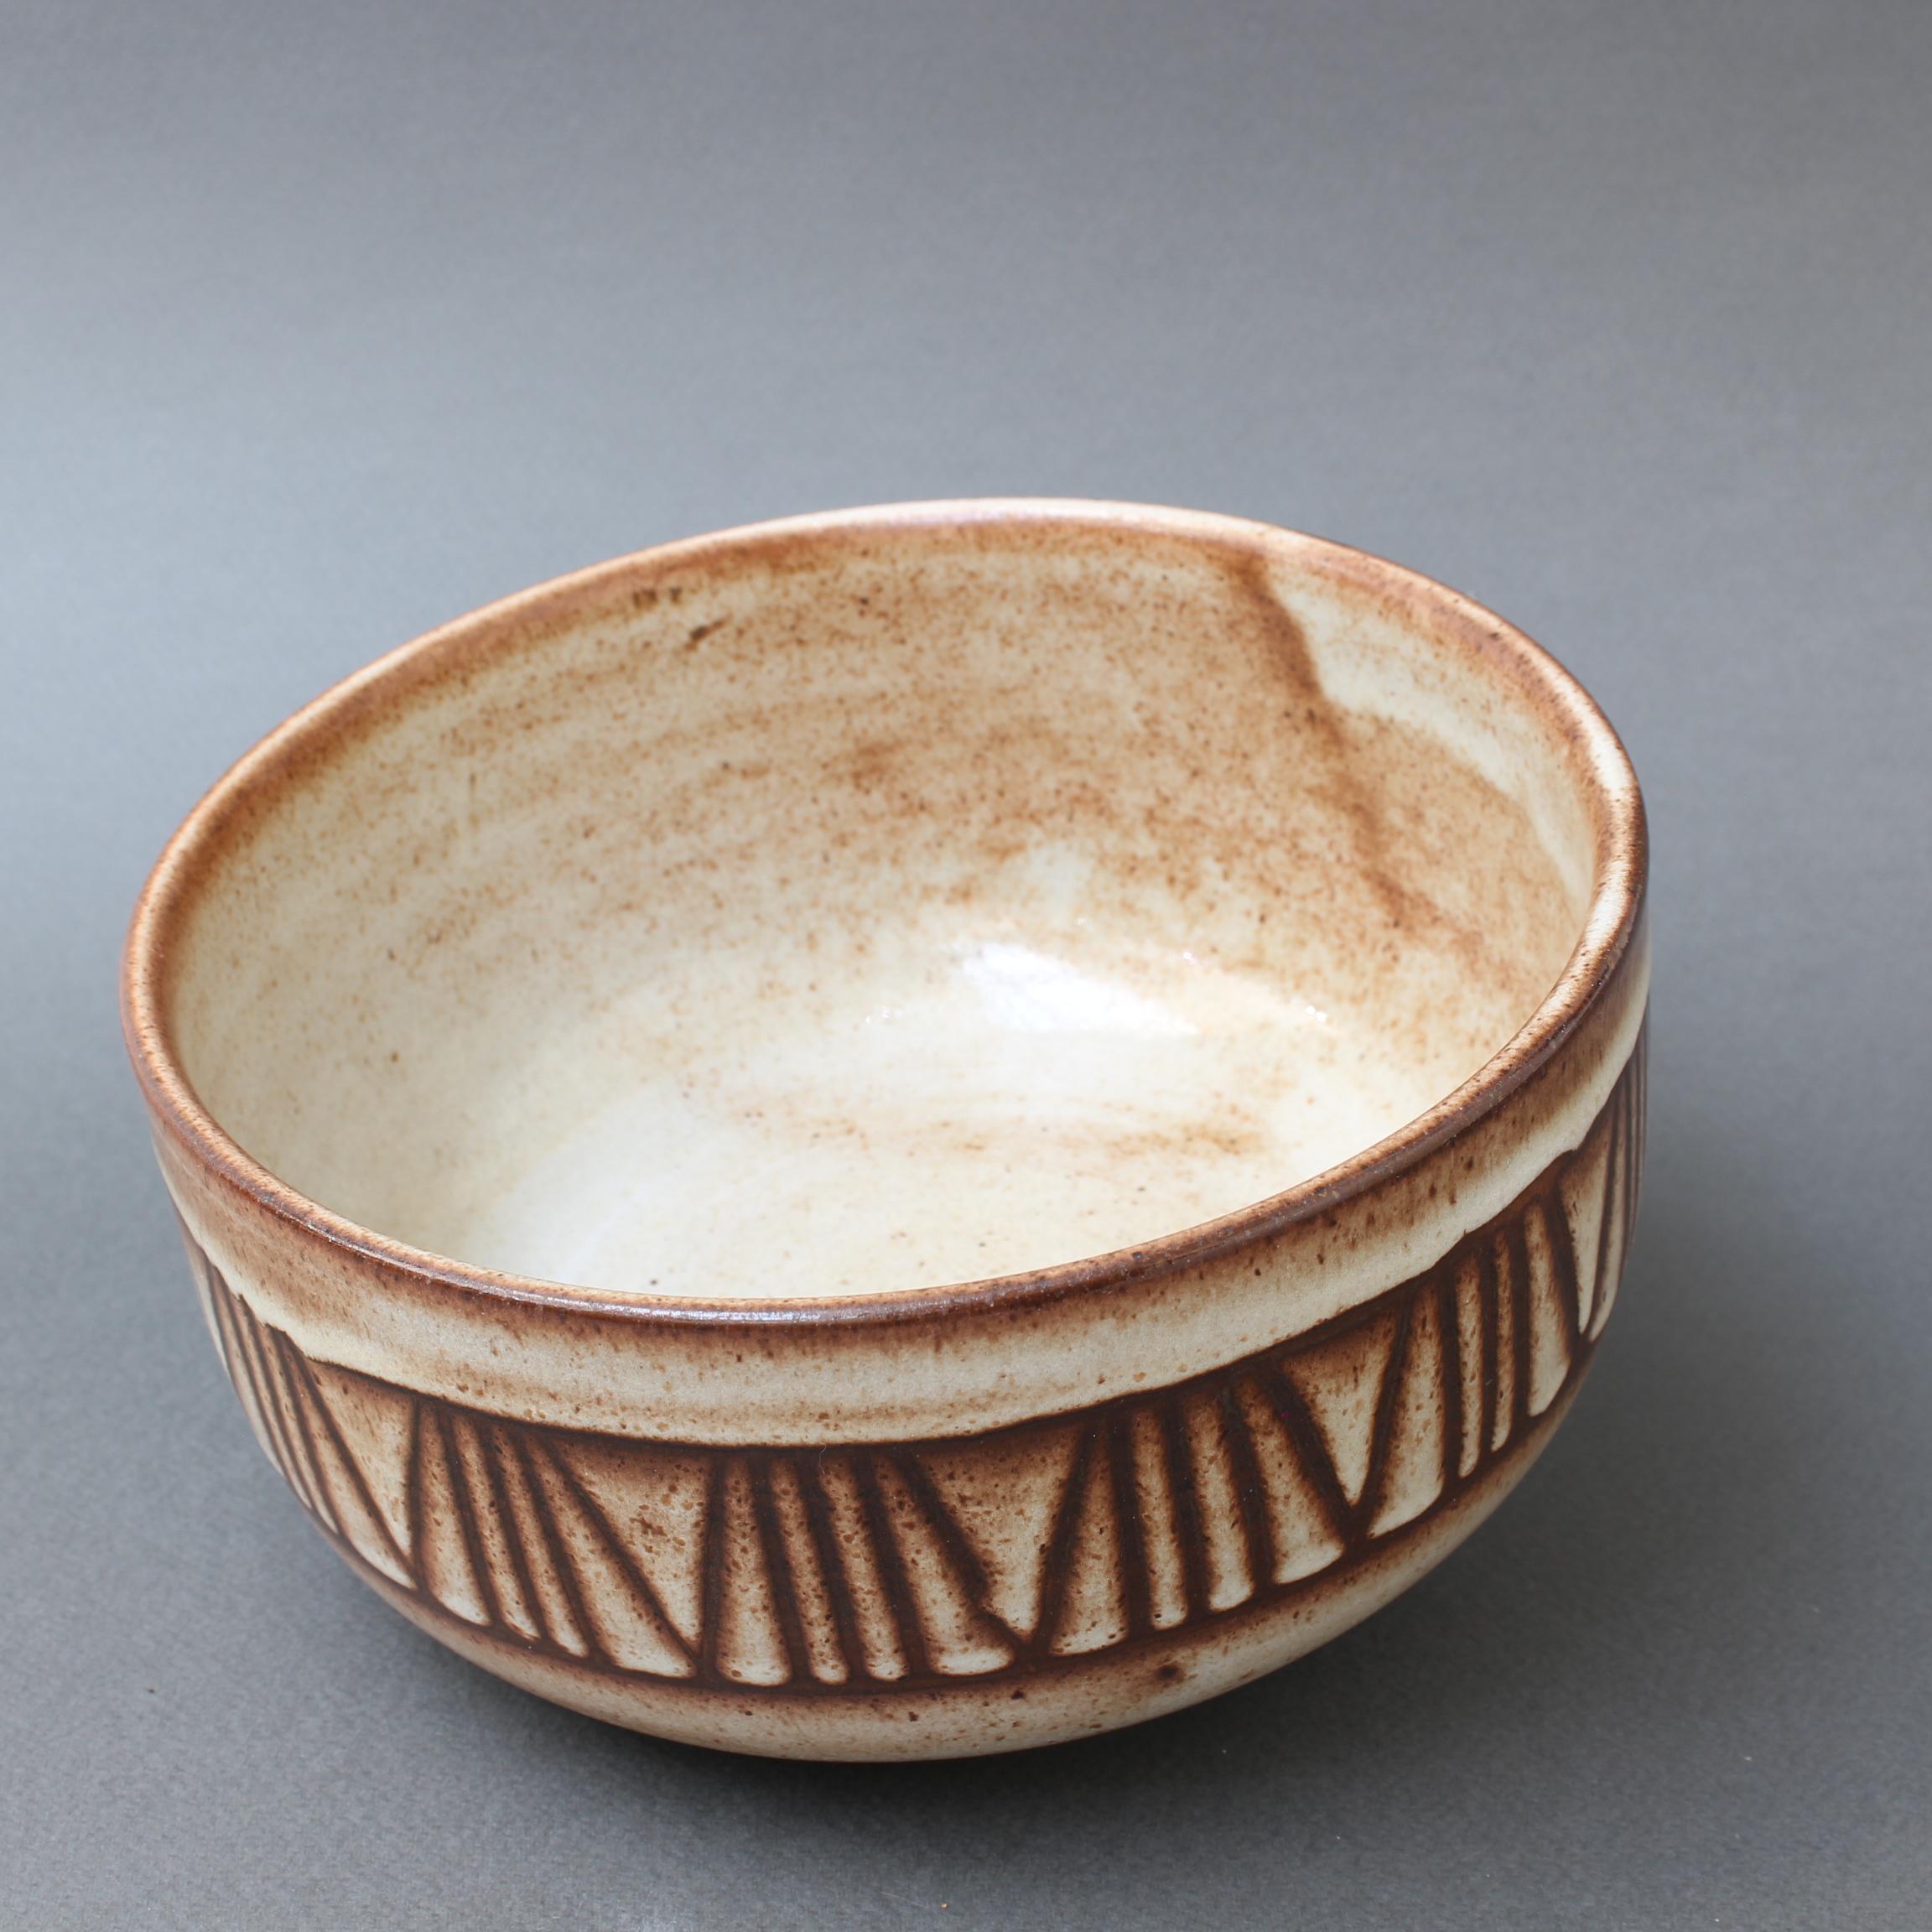 Ceramic Decorative Bowl by Jacques Pouchain, Atelier Dieulefit, circa 1960s